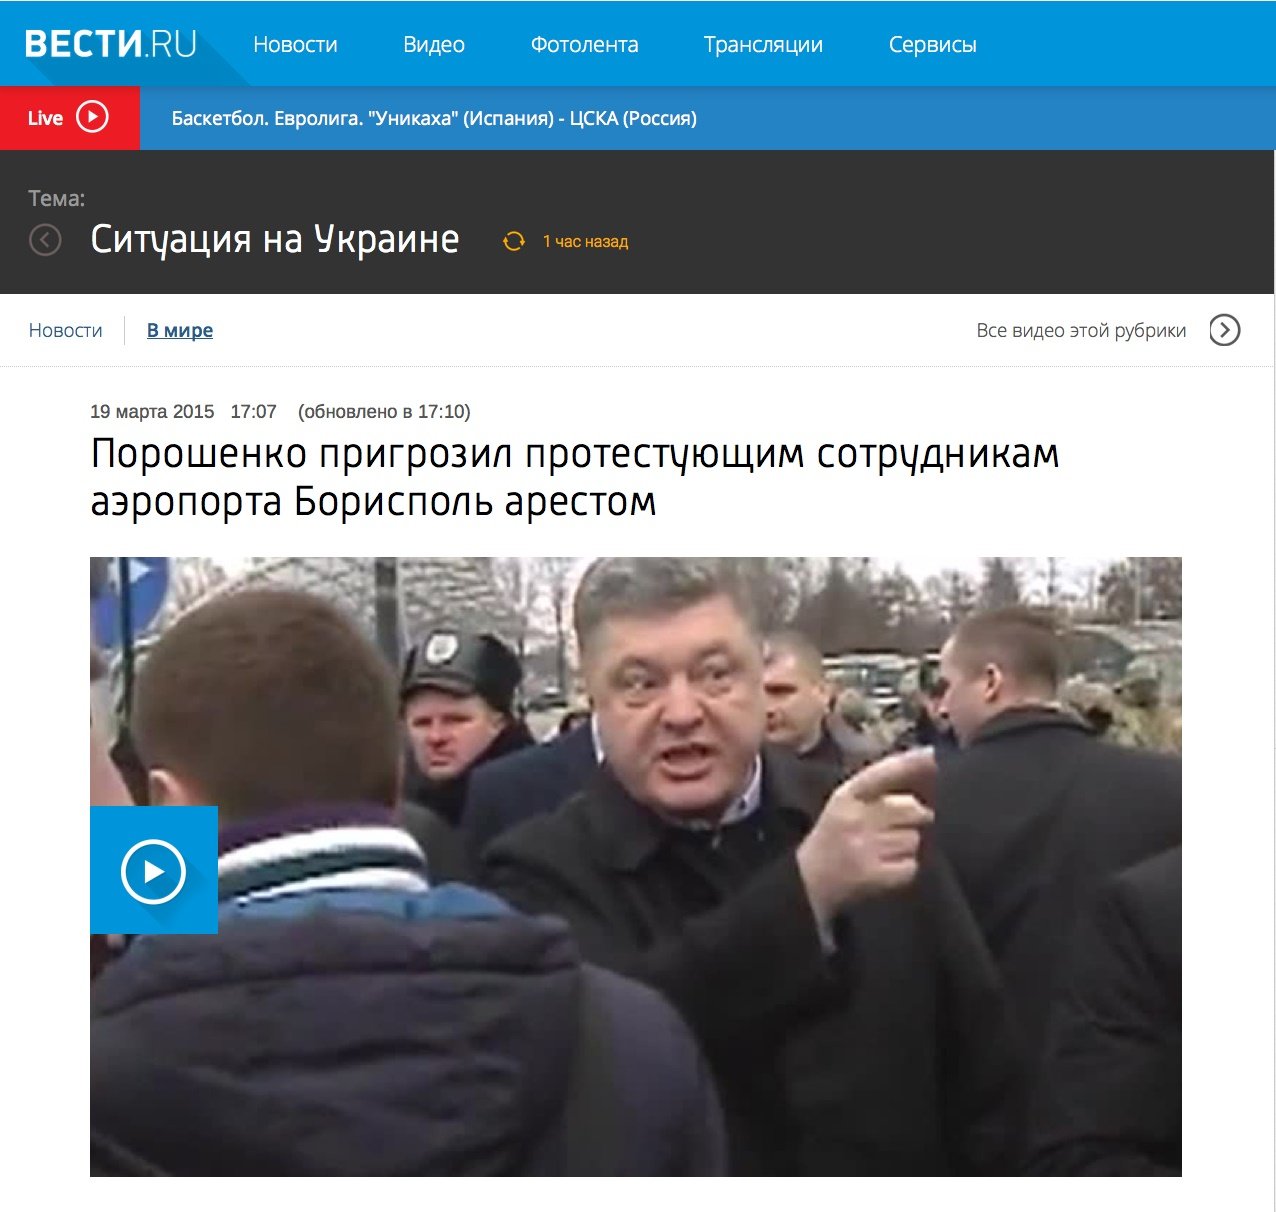 Screen of Vesti.ru site